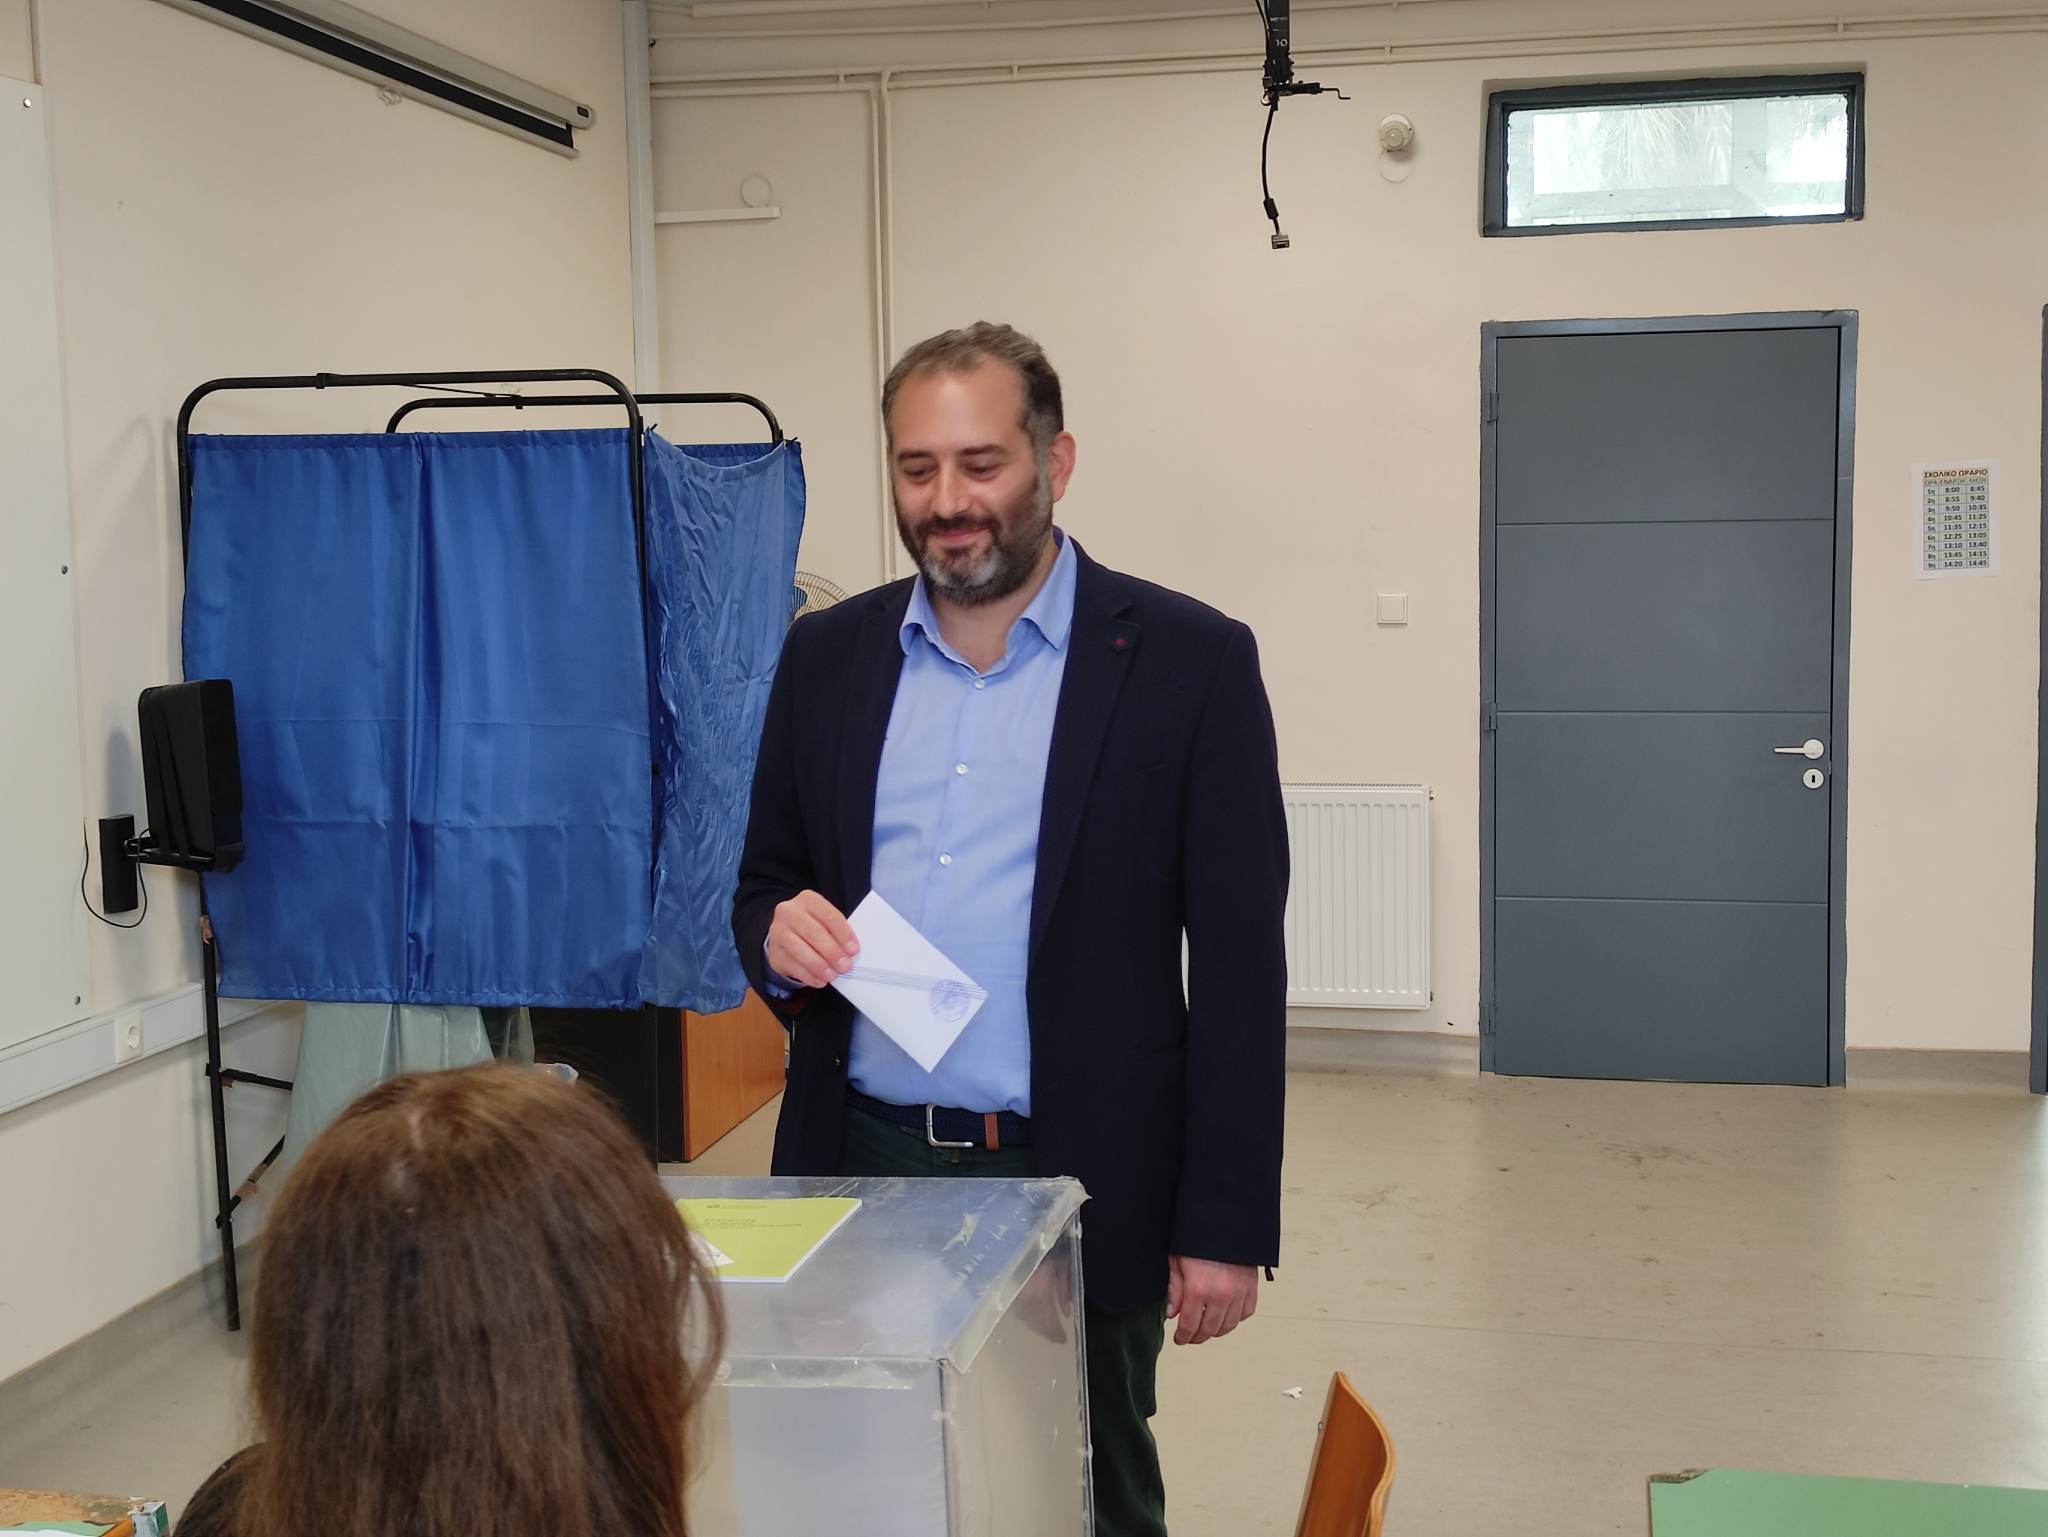 Άσκησε το εκλογικό του δικαίωμα ο υποψήφιος βουλευτής Γιώργος Πετρέλλης